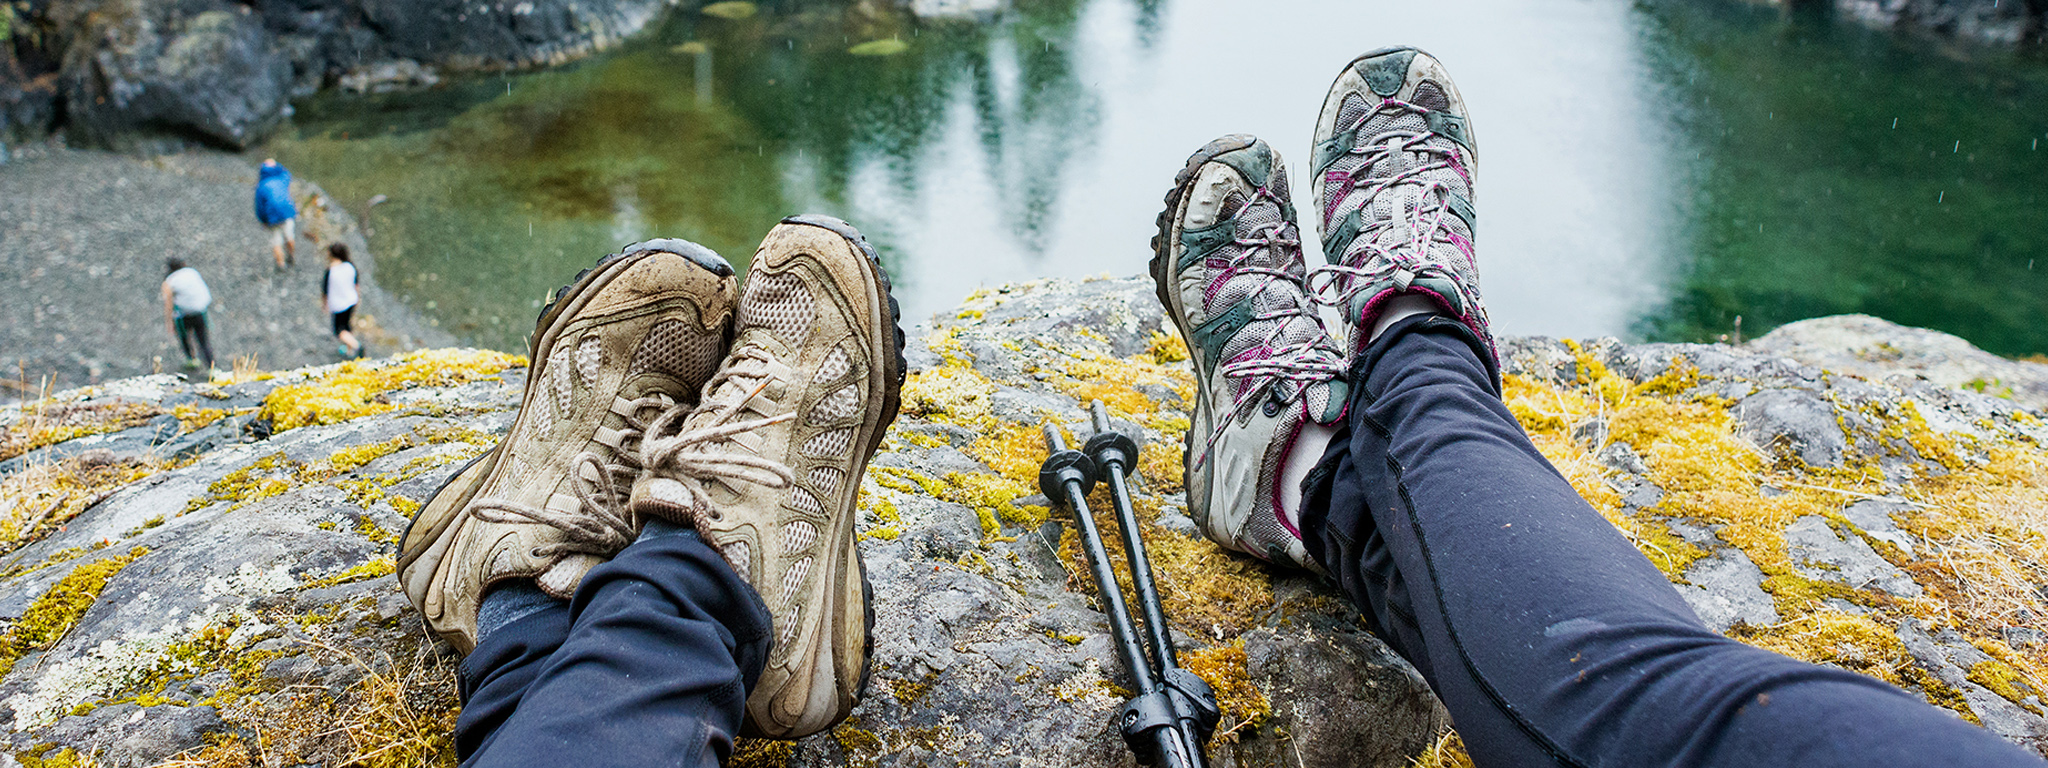 I piedi di due persone penzolano sul bordo di una roccia che si affaccia su un lago.